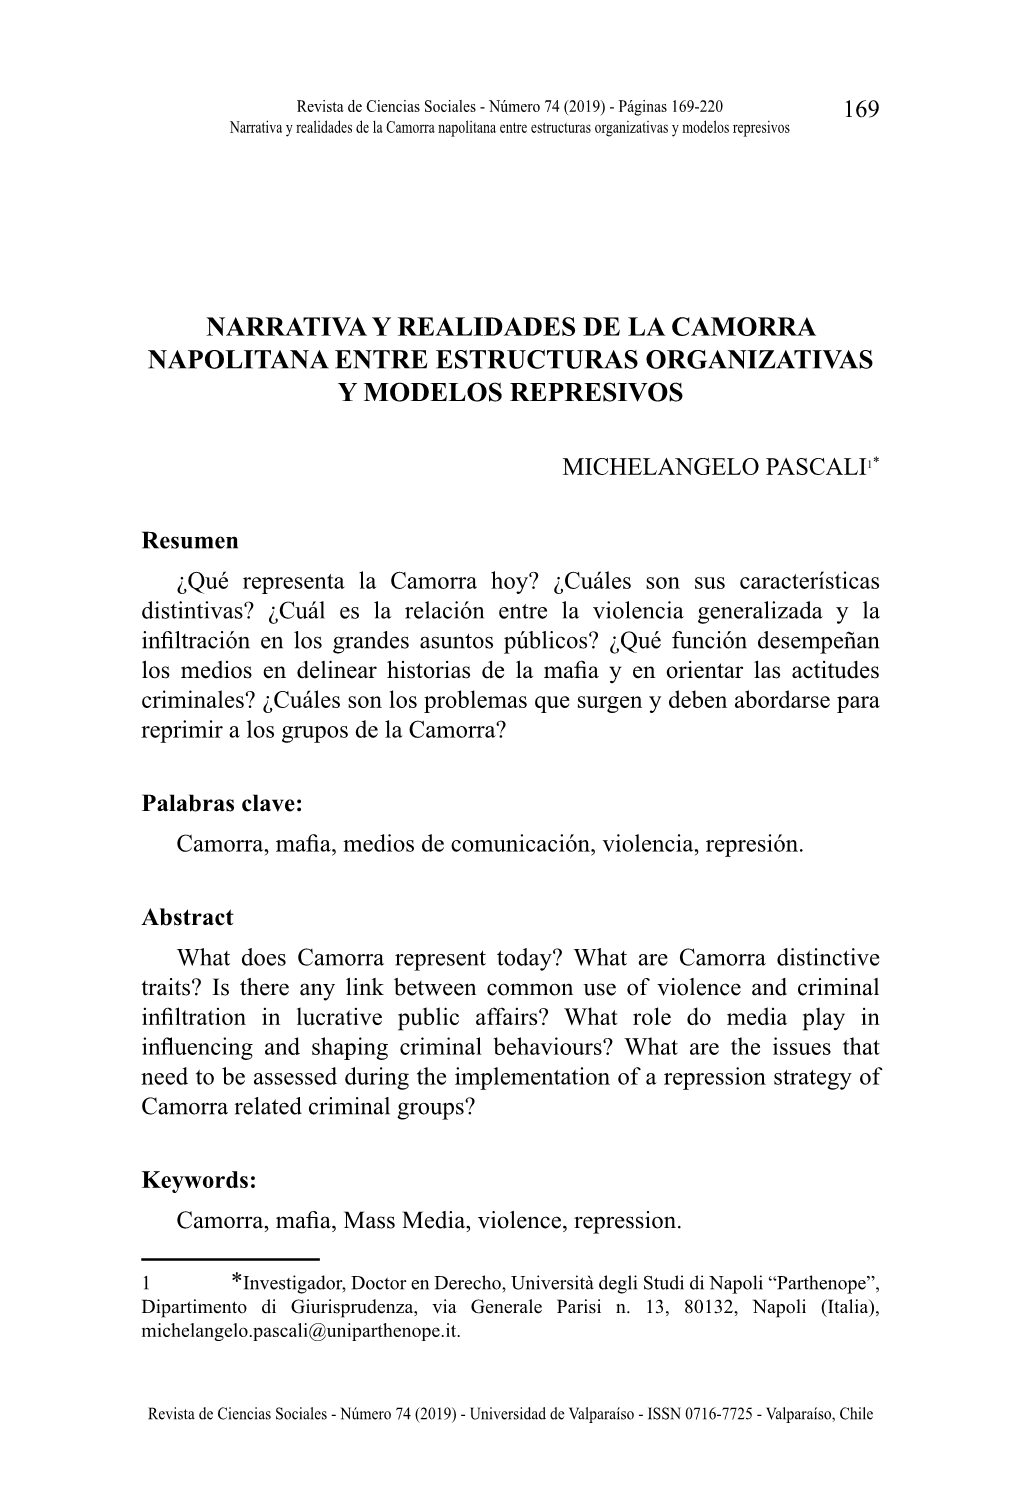 Narrativa Y Realidades De La Camorra Napolitana Entre Estructuras Organizativas Y Modelos Represivos